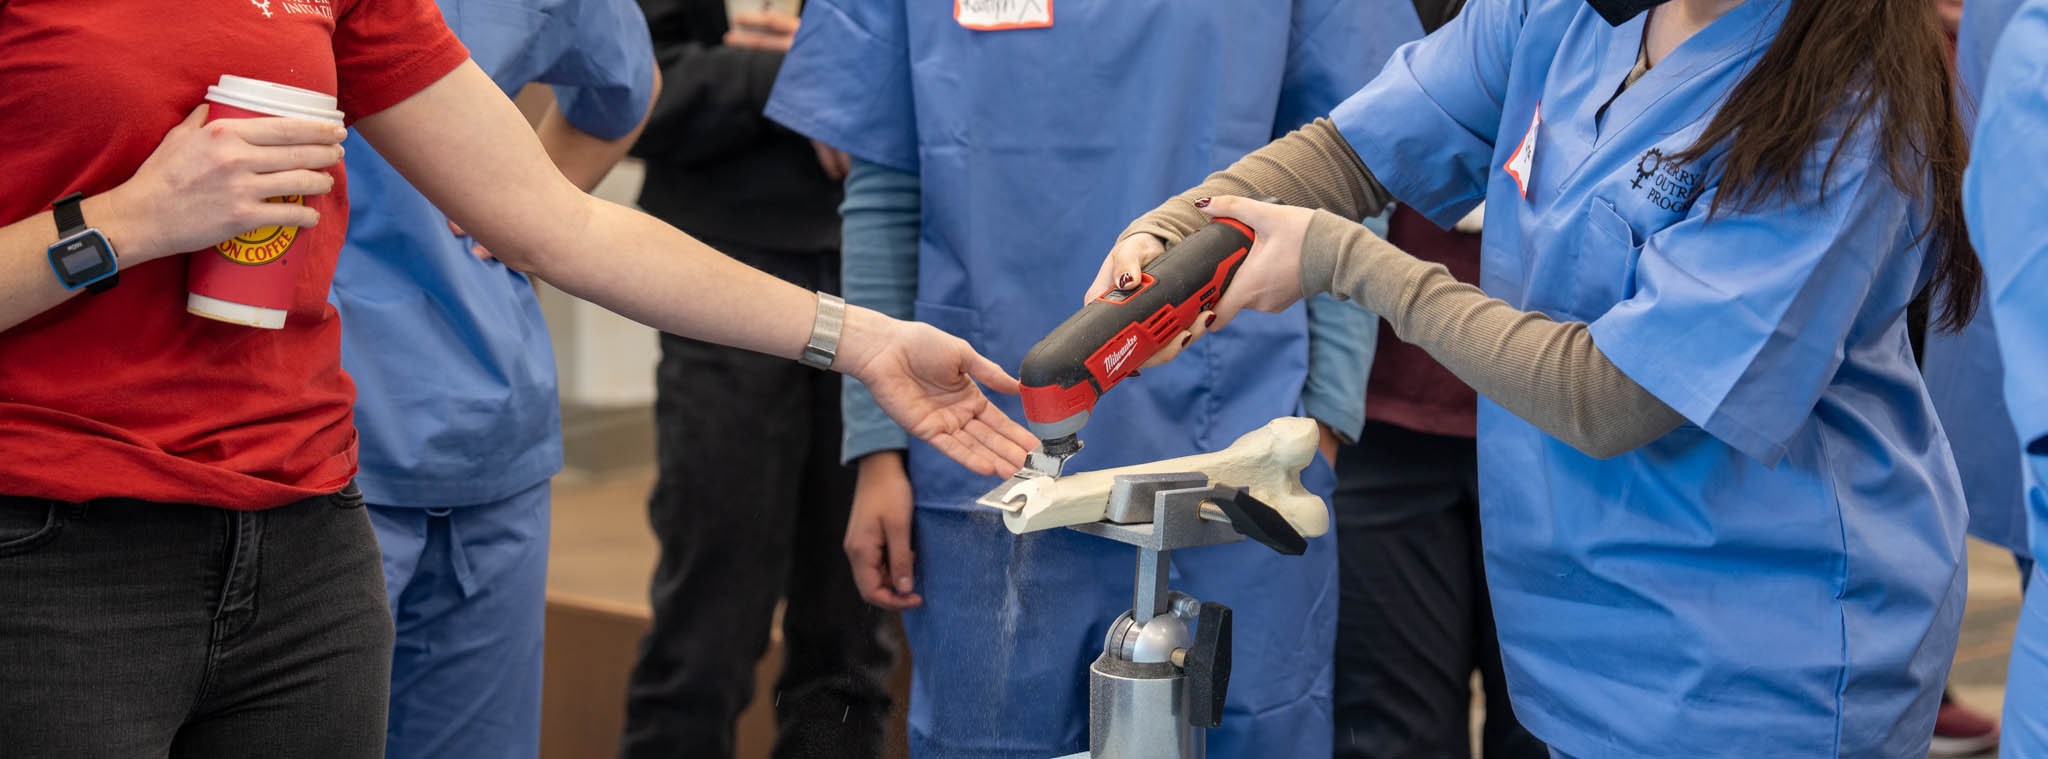 Étudiants interagissant avec un outil et une prothèse osseuse